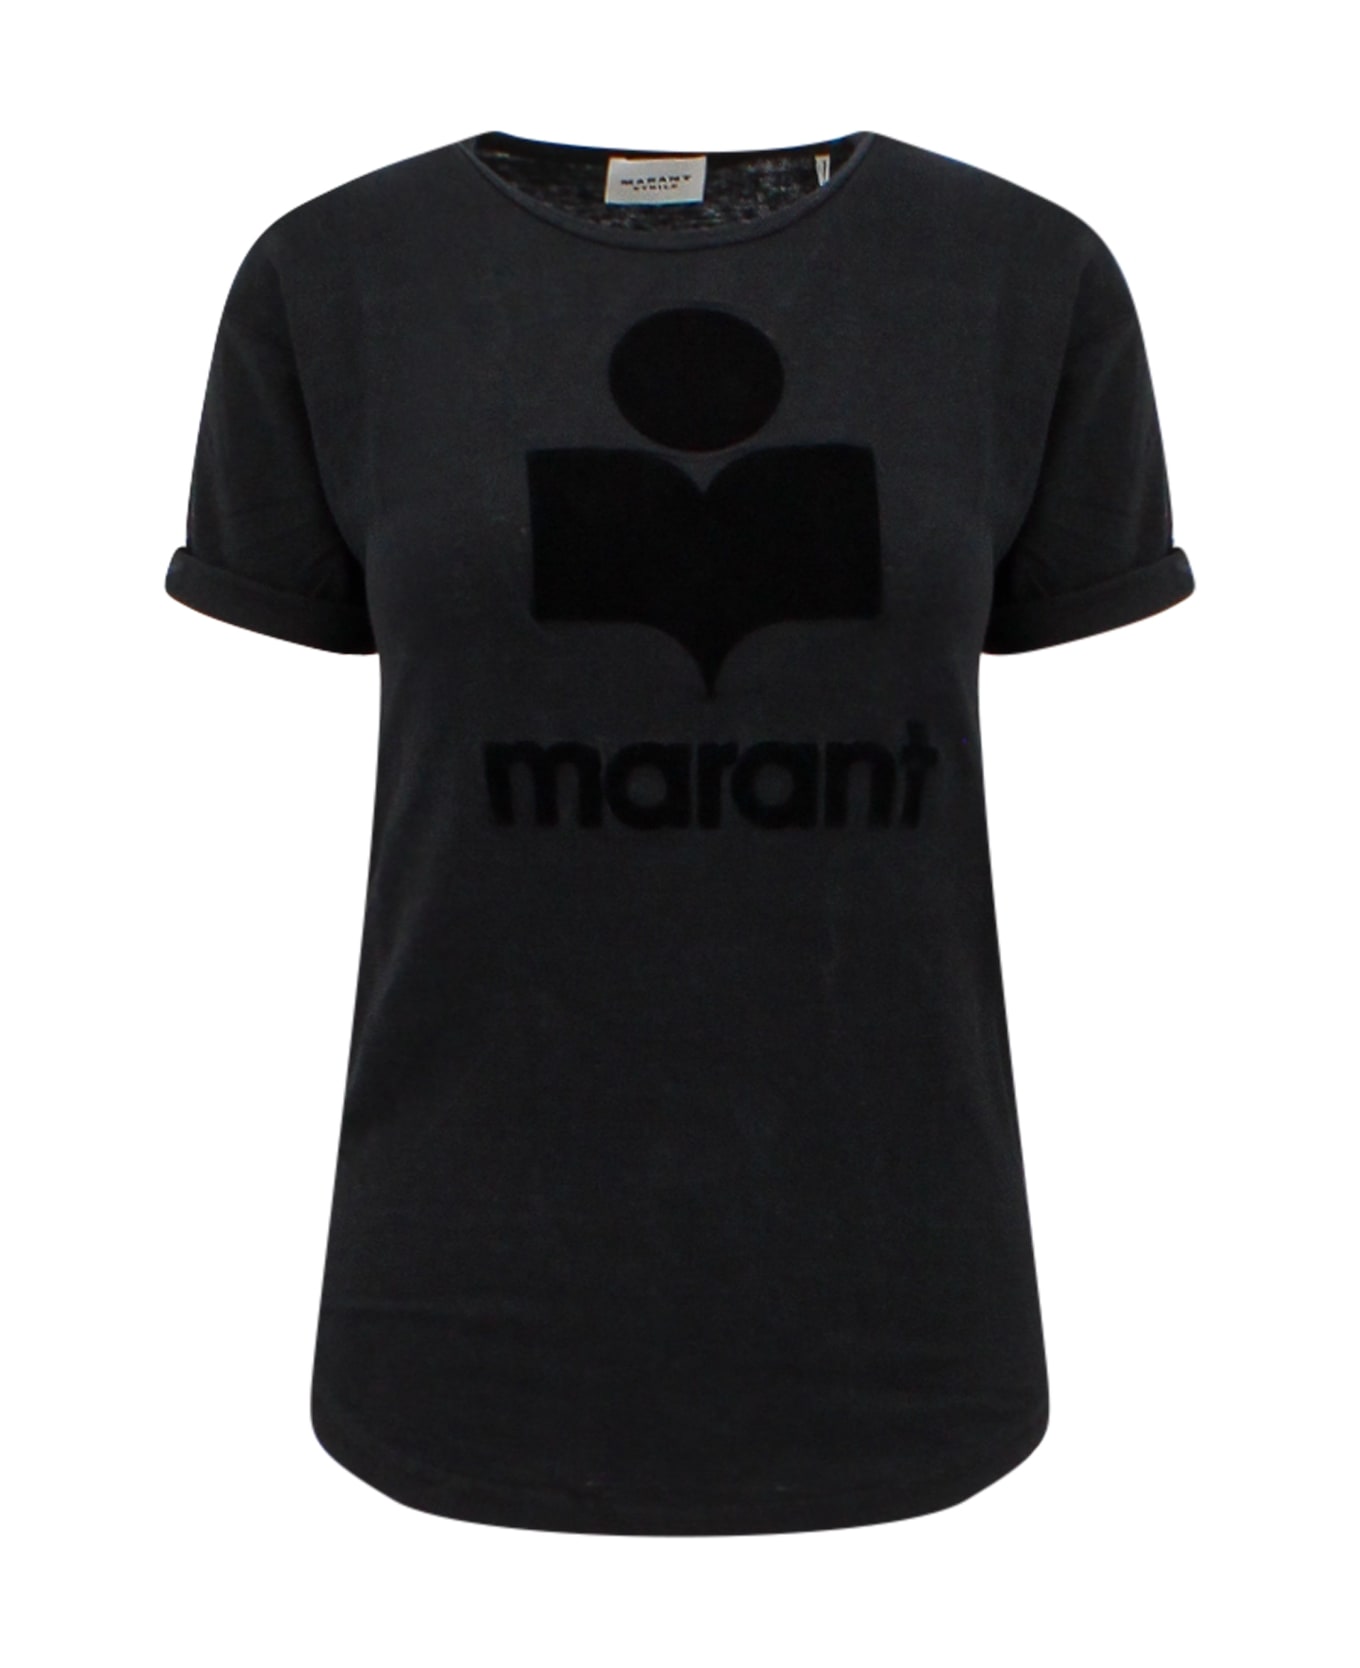 Marant Étoile Koldi T-shirt - Black